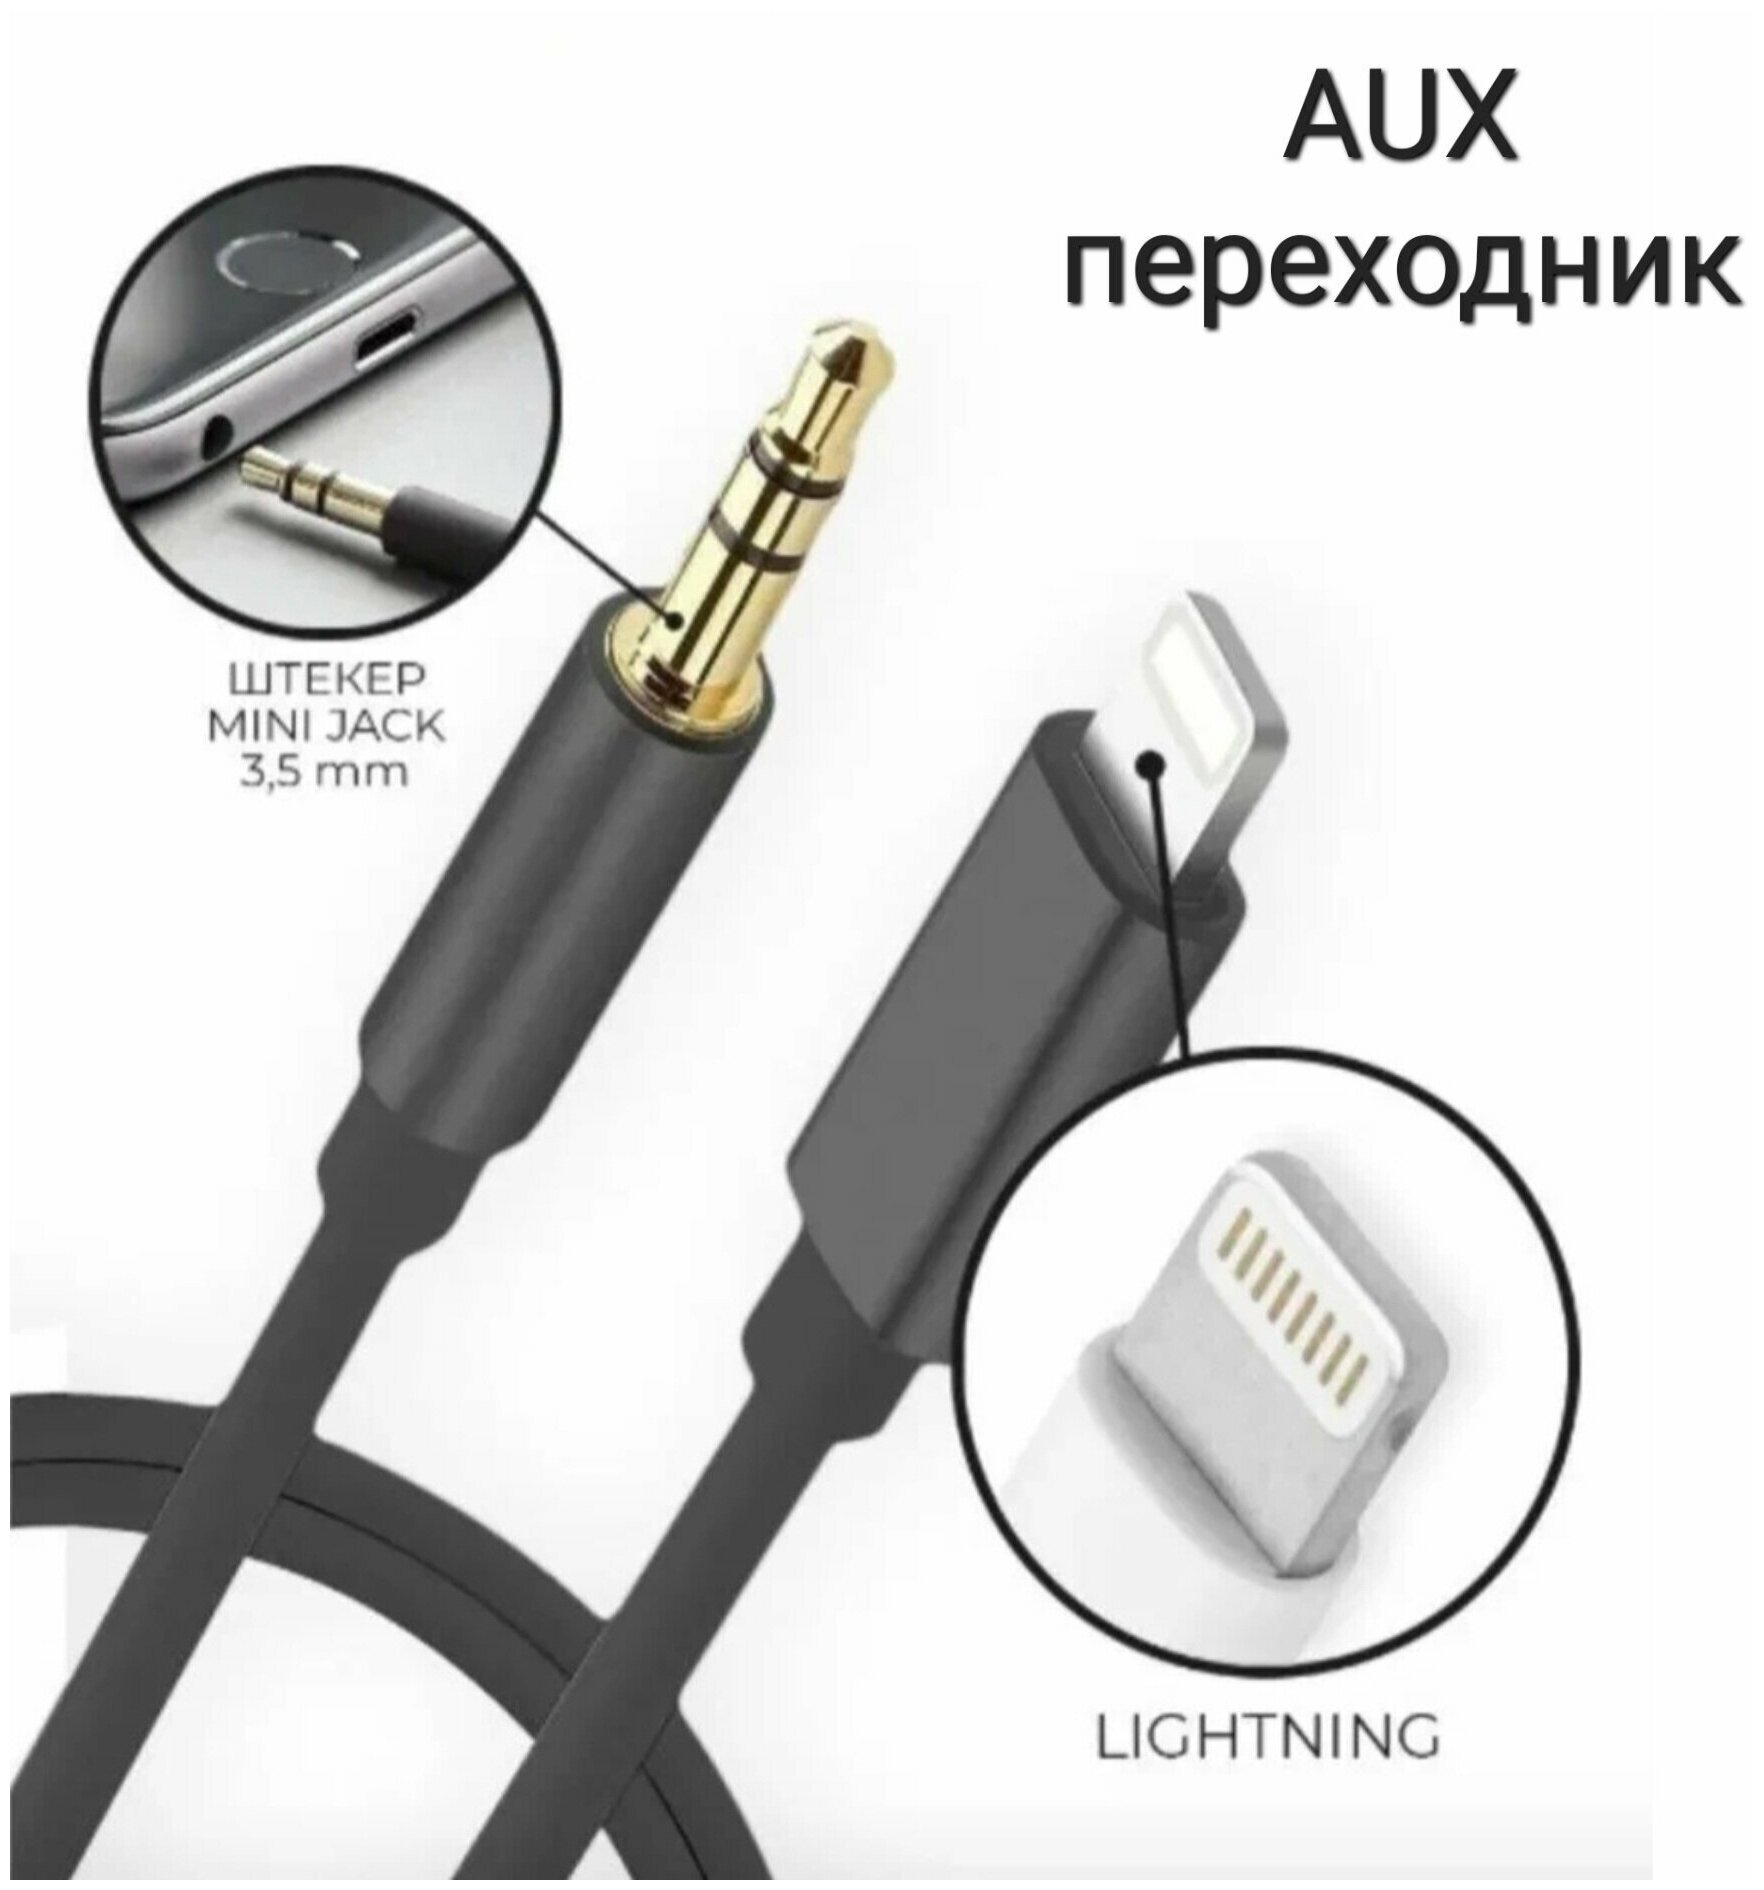 Переходник lightning 3.5 jack, AUX для айфона, Адаптер apple, кабель лайтнинг iPhone/ переходник для наушников/ aux кабель в машину